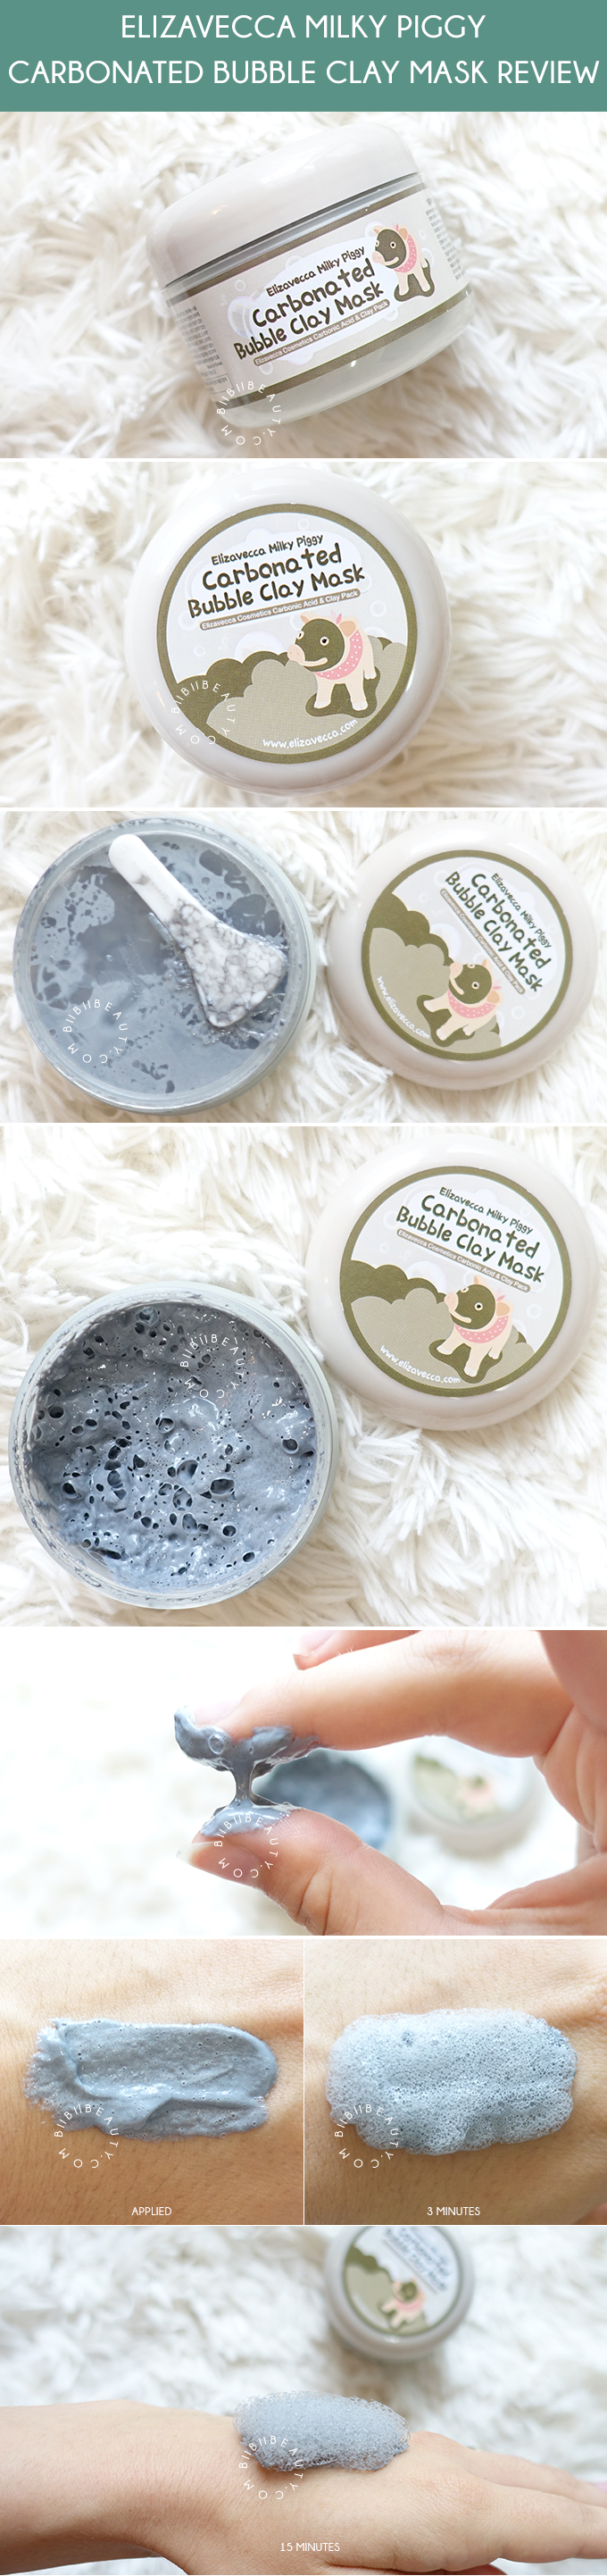 Elizavecca Milky Piggy Carbonated Bubble Clay Mask Review